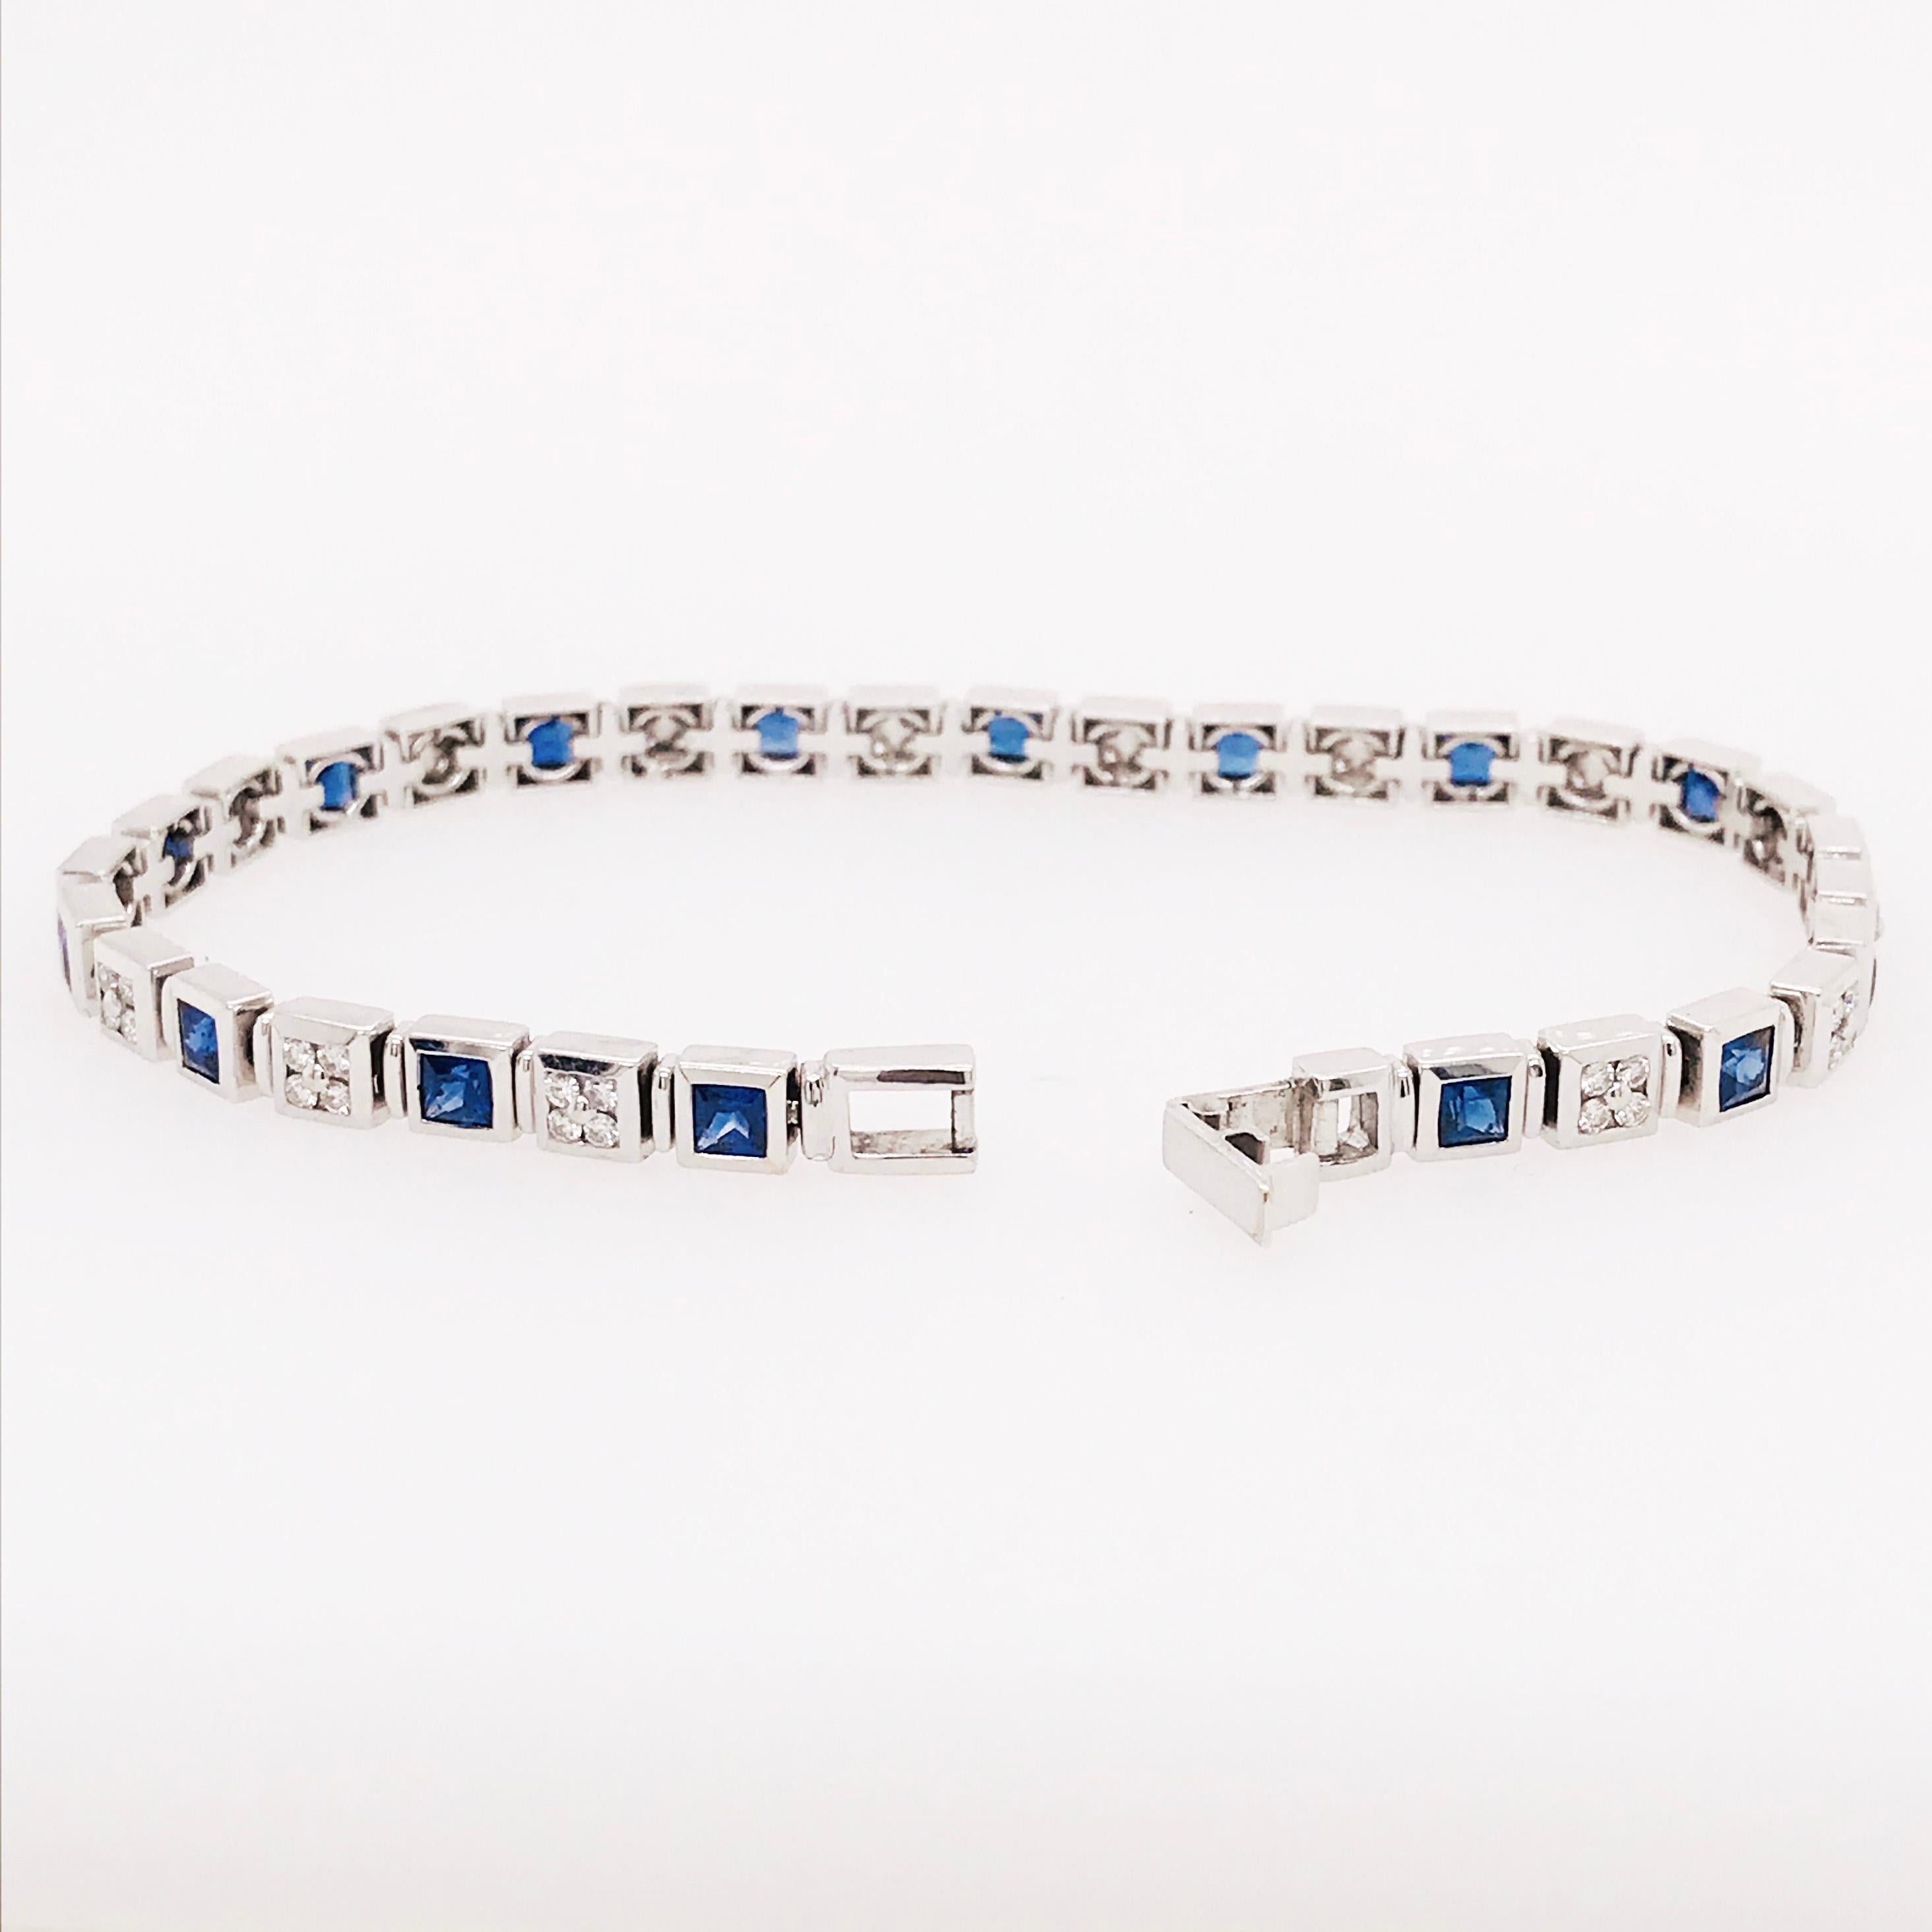 Echter blauer Saphir im Prinzessinnenschliff und weißer Naturdiamant als Tennisarmband. Mit einem abwechselnden Muster aus echten blauen Saphirsteinen und natürlichen runden Brillanten. Jedes Glied wurde von Hand gefertigt und perfekt aufeinander